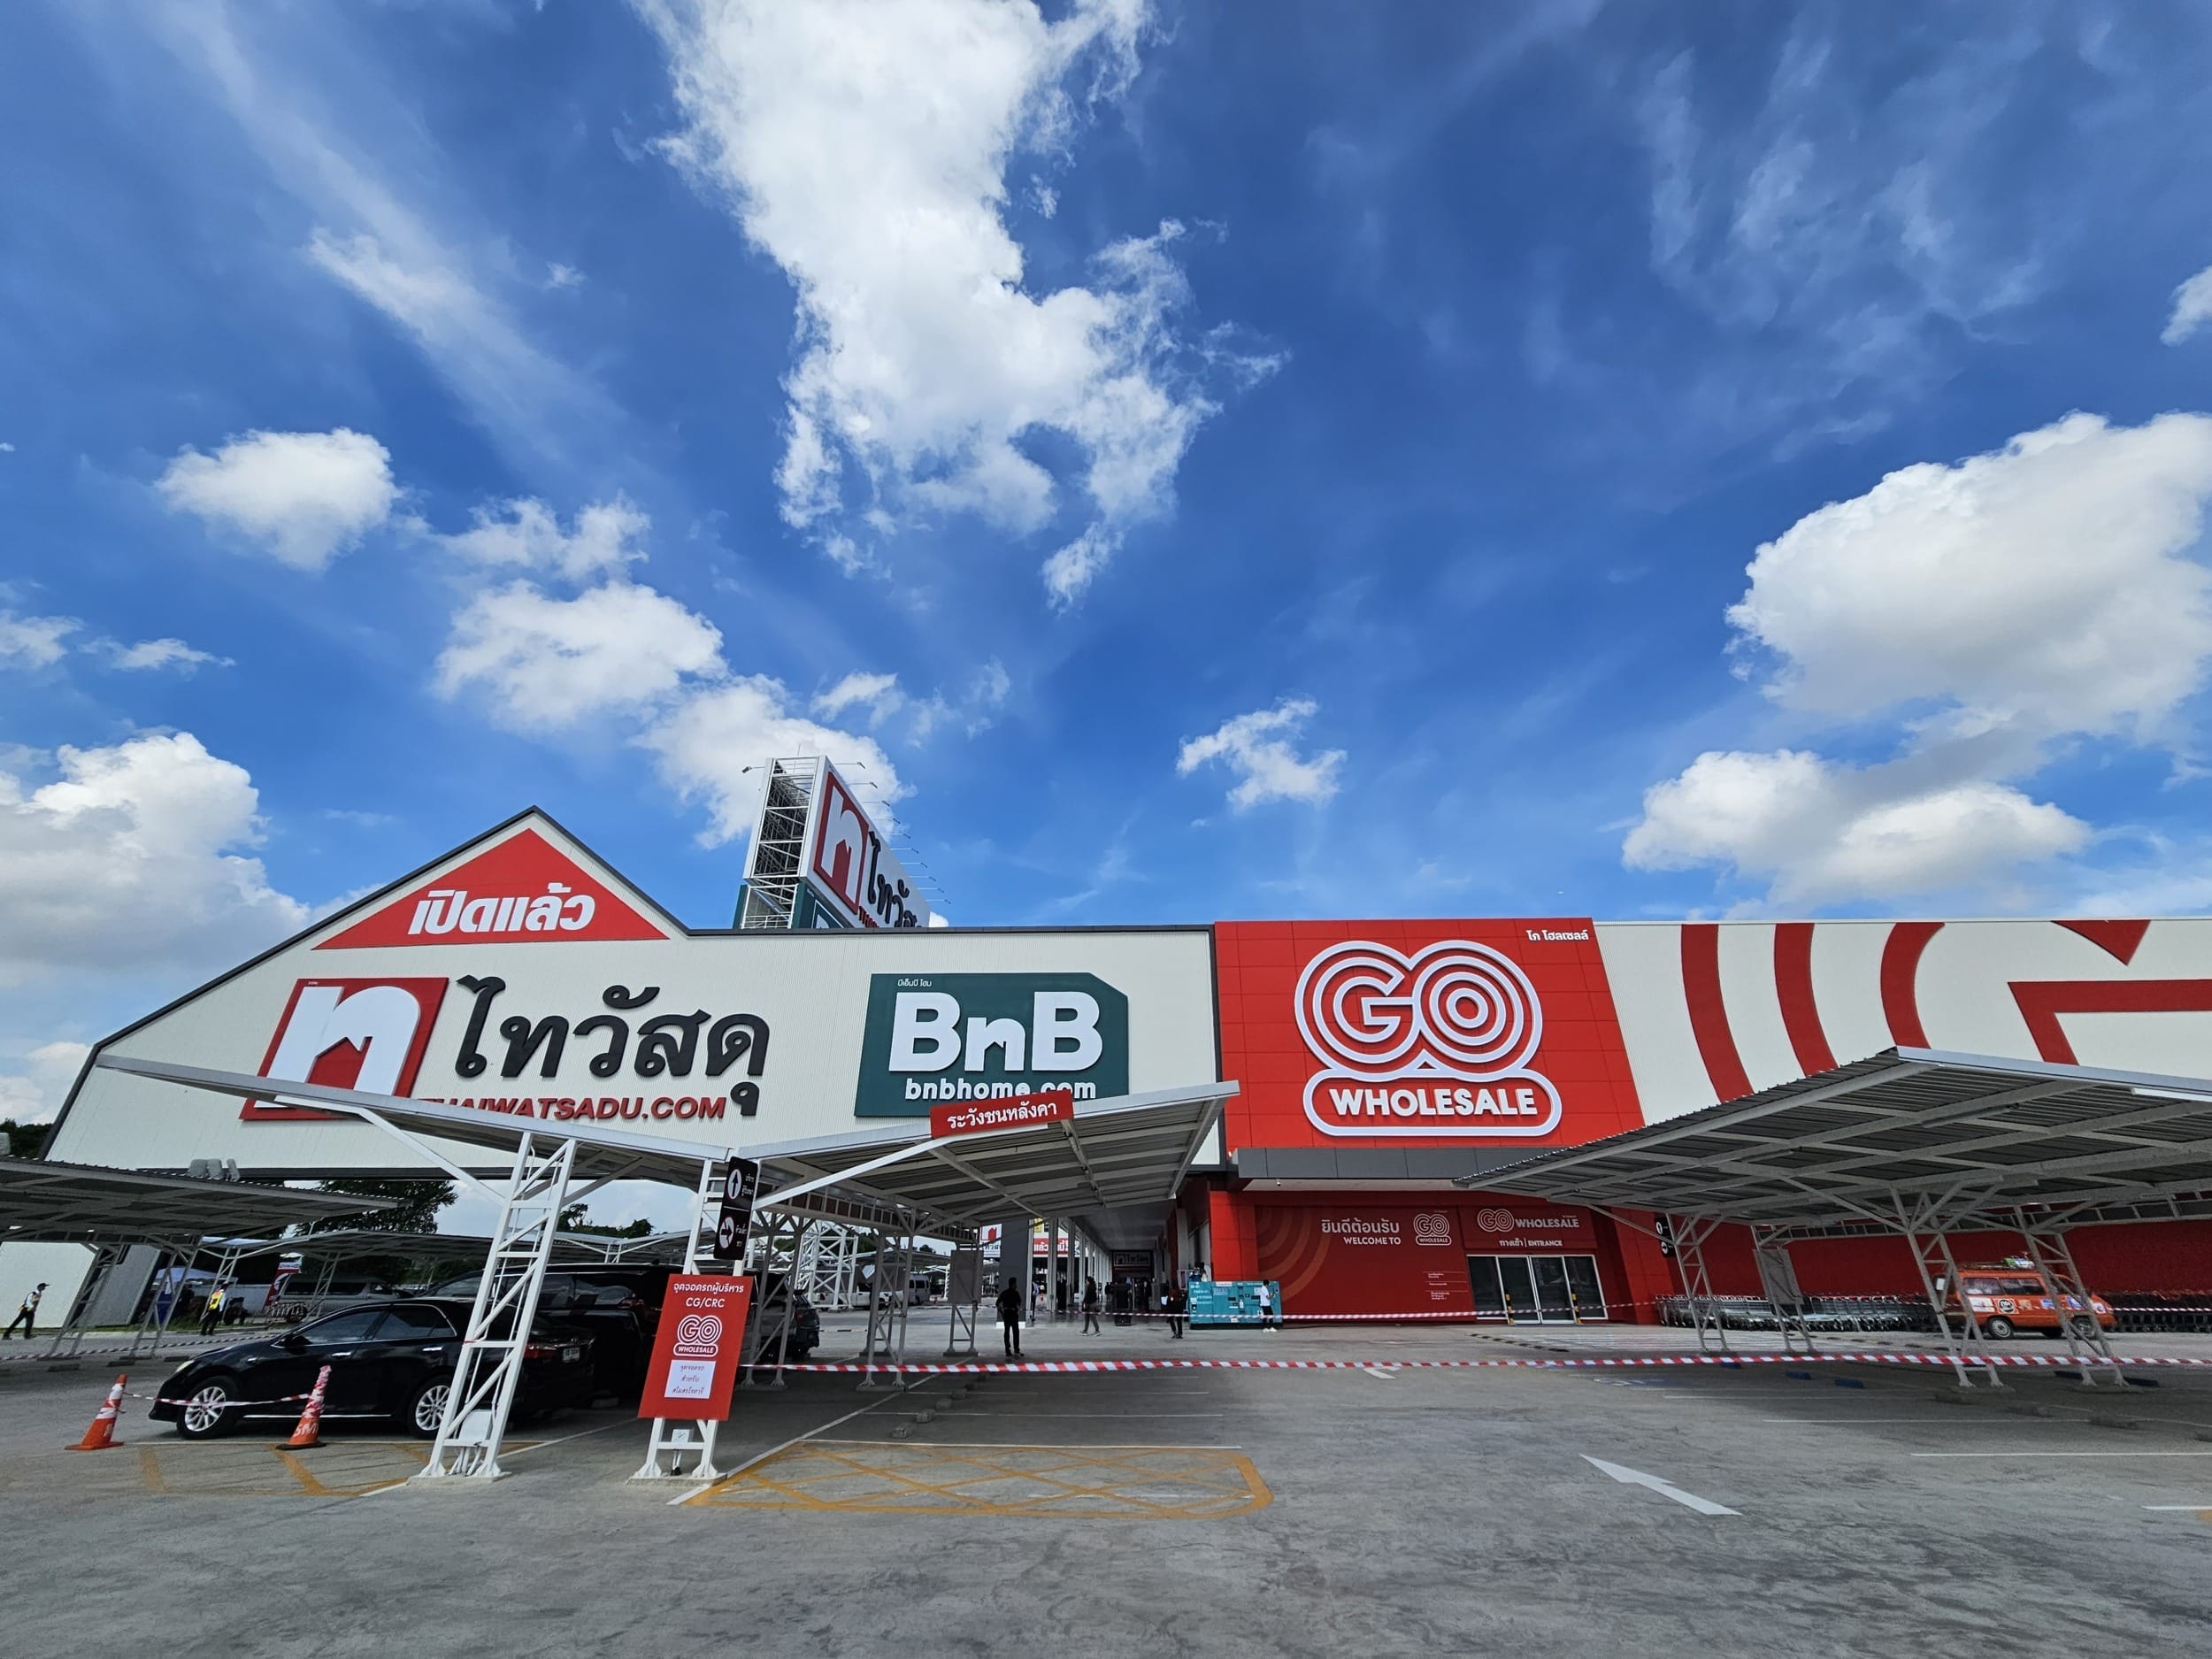 เดินเล่นห้างใหม่ GO Wholesale ทางเลือกใหม่ของวงการค้าส่งเมืองไทย